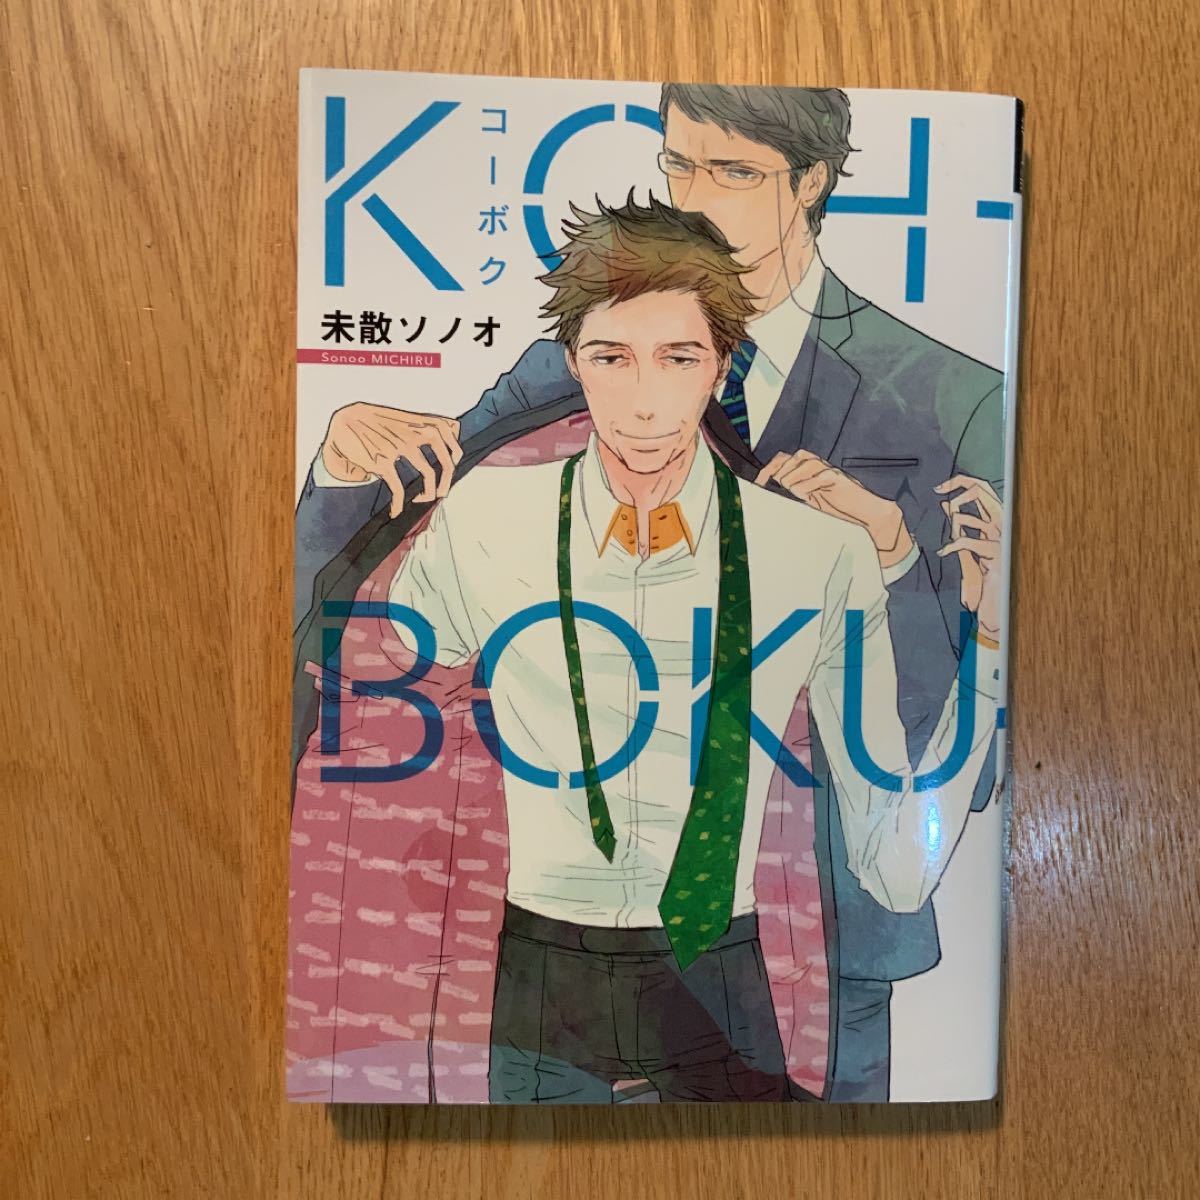 BL コミック「KOH-BOKU」未散ソノオ